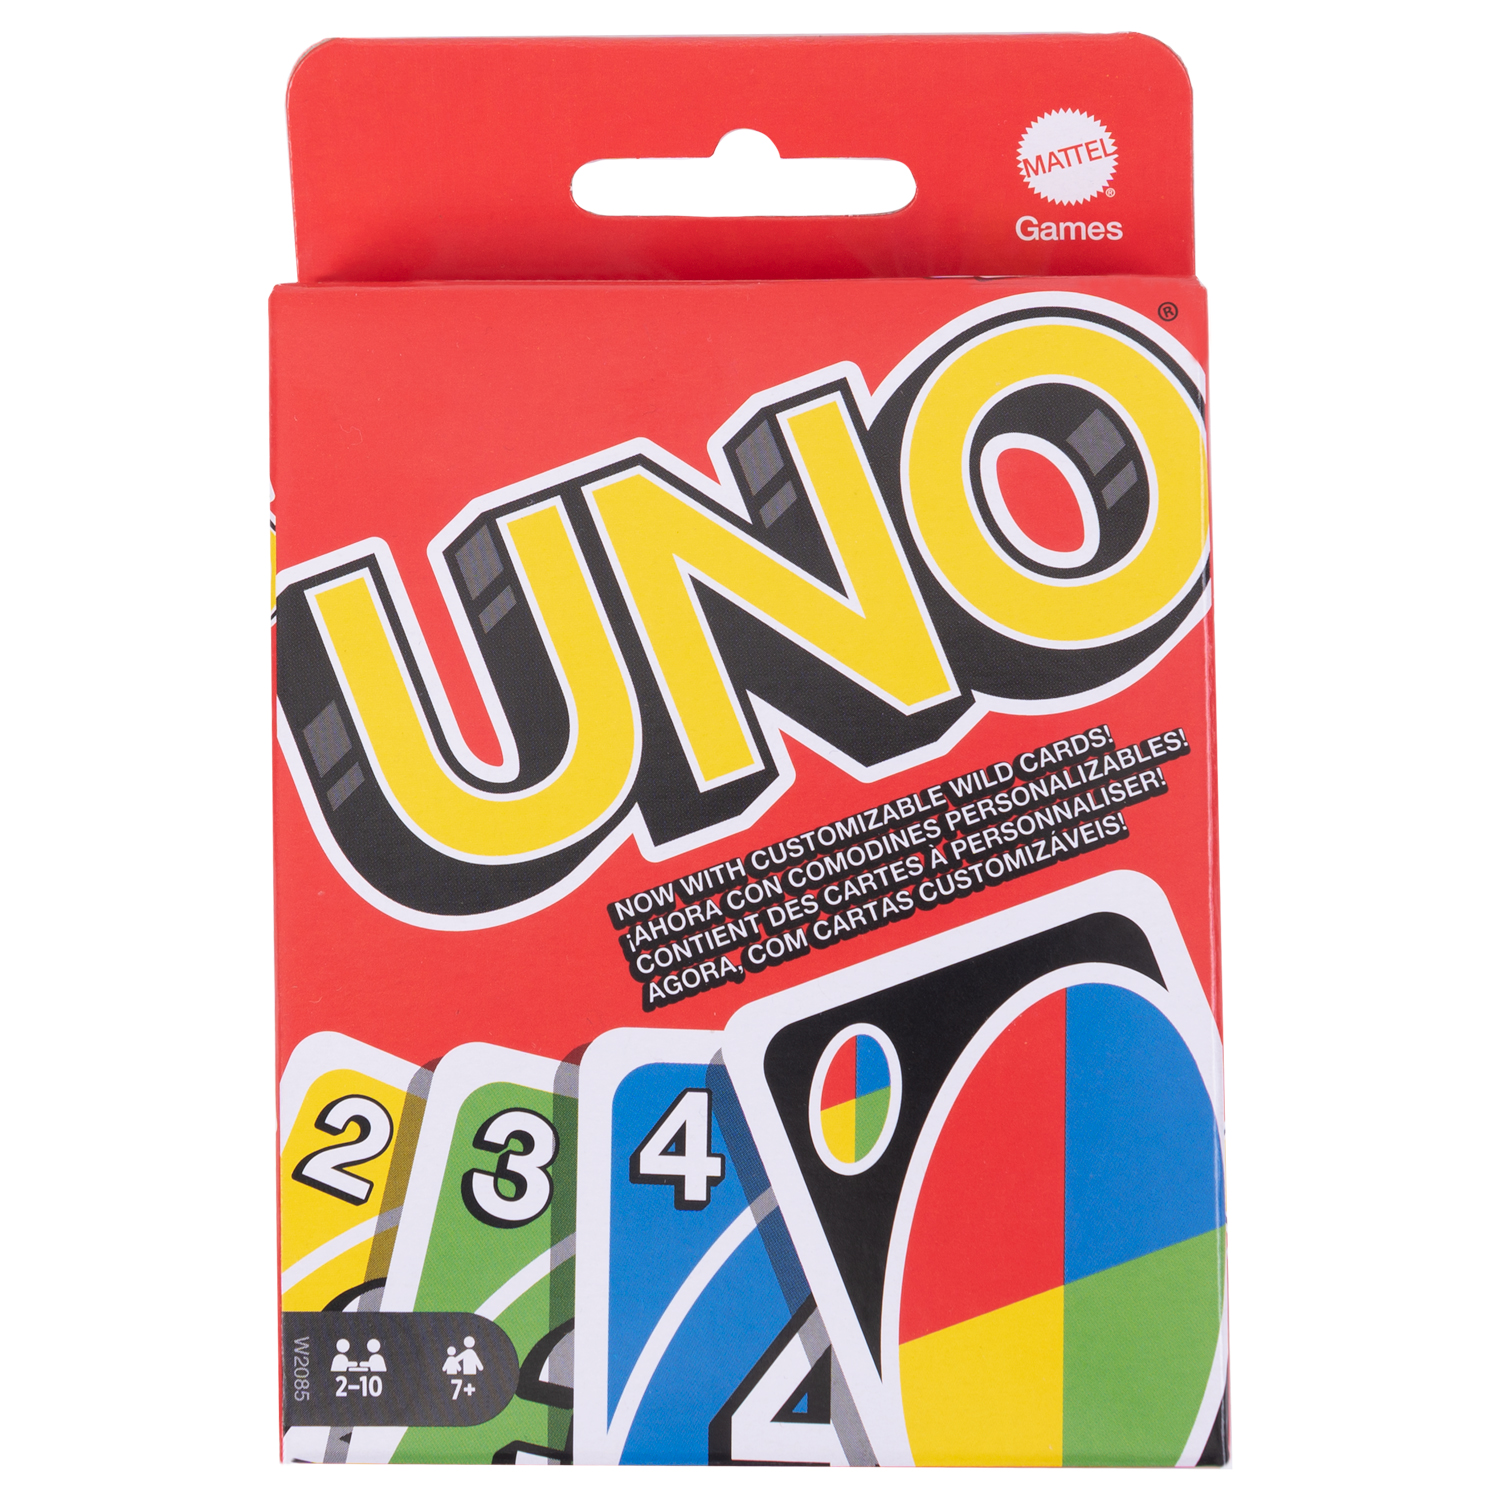 Règle du jeu Uno - jeu de société